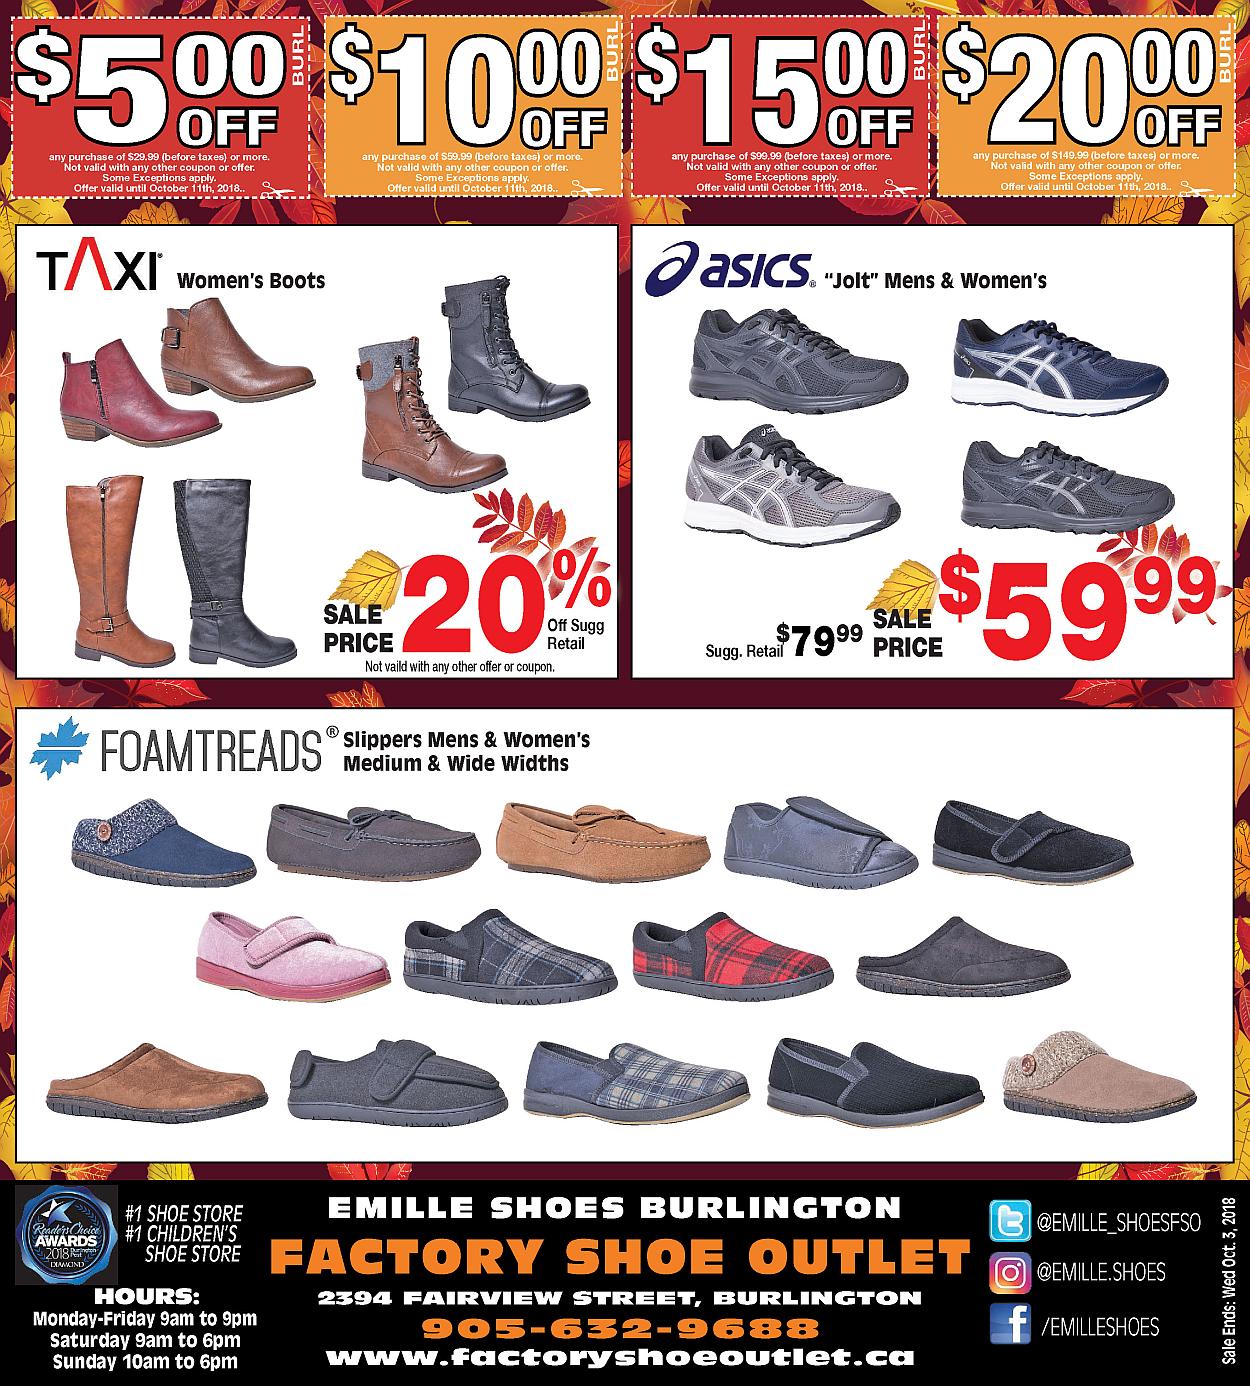 Brown Shoe Factory Outlet | 163 Ormond St, Brockville, ON K6V 2L2 | +1 613-342-5616